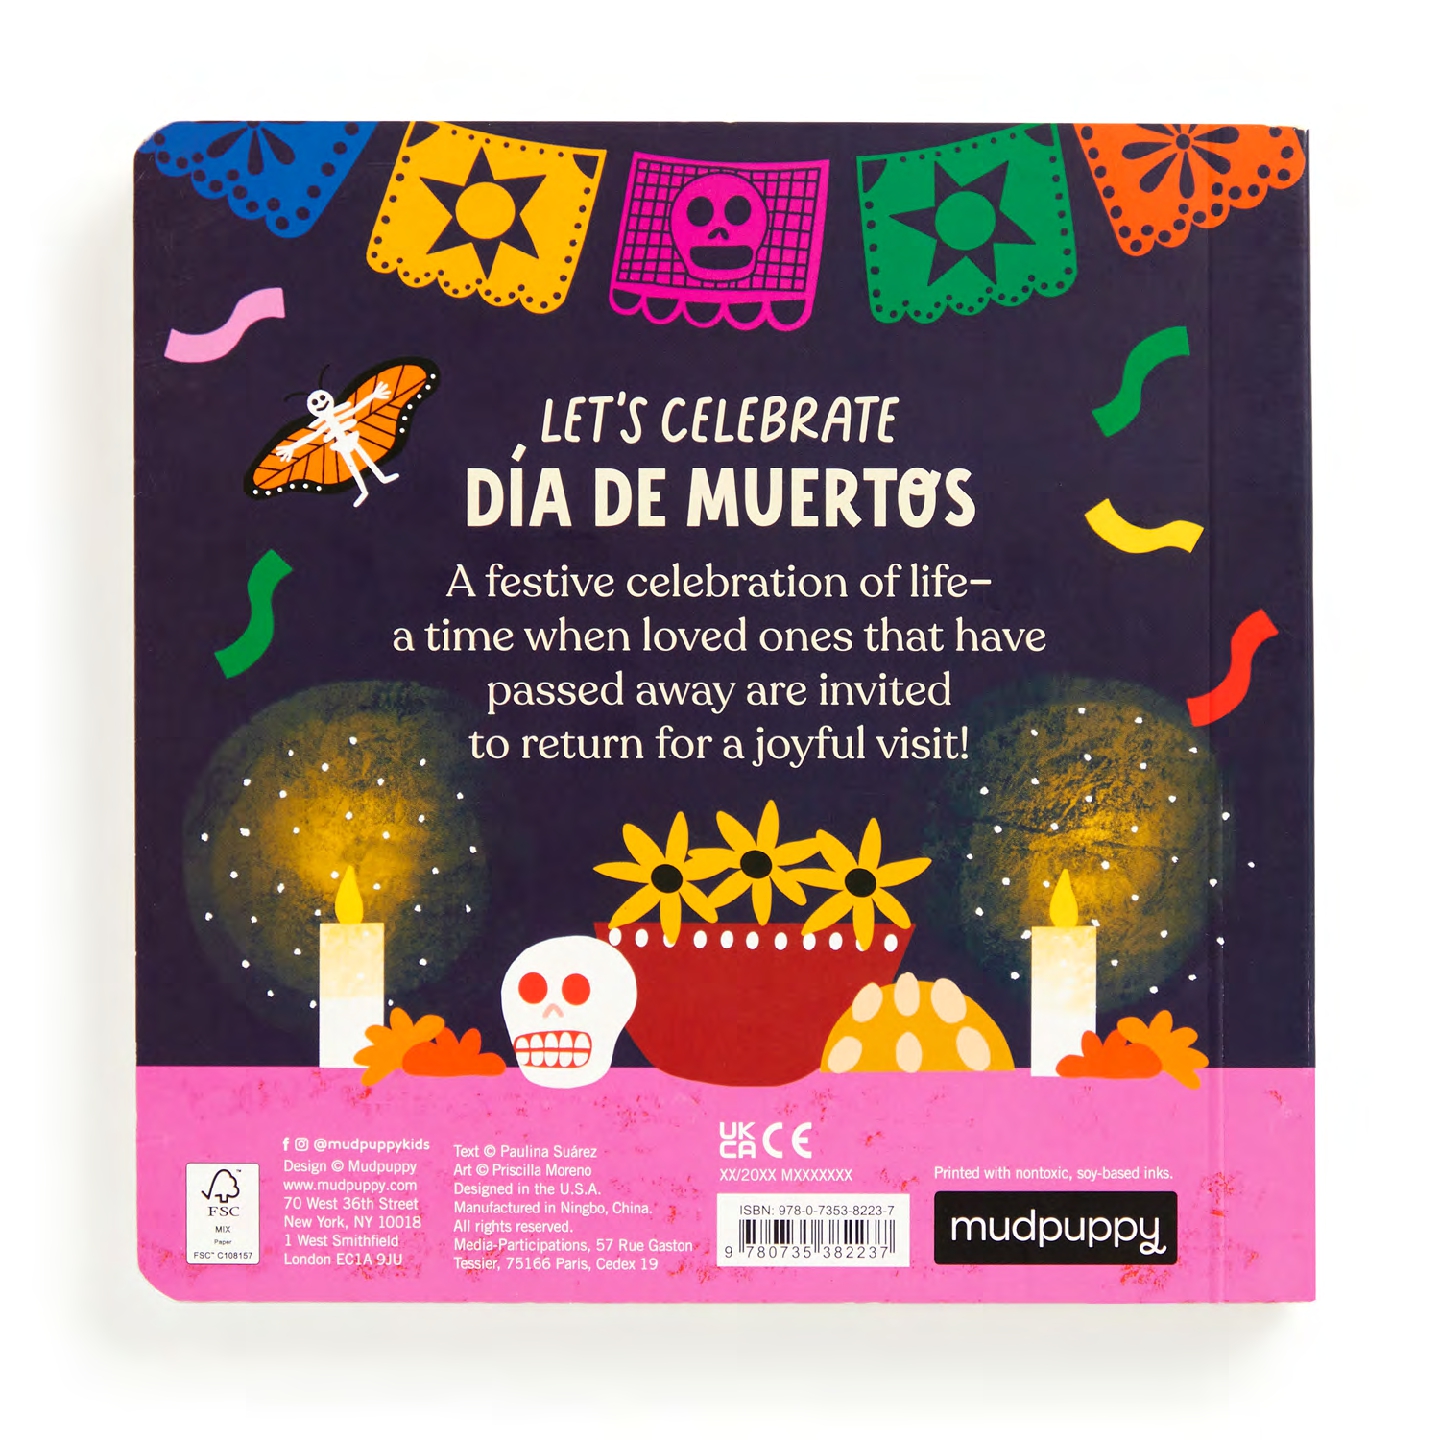 Let's Celebrate Dia de Muertos Board Book